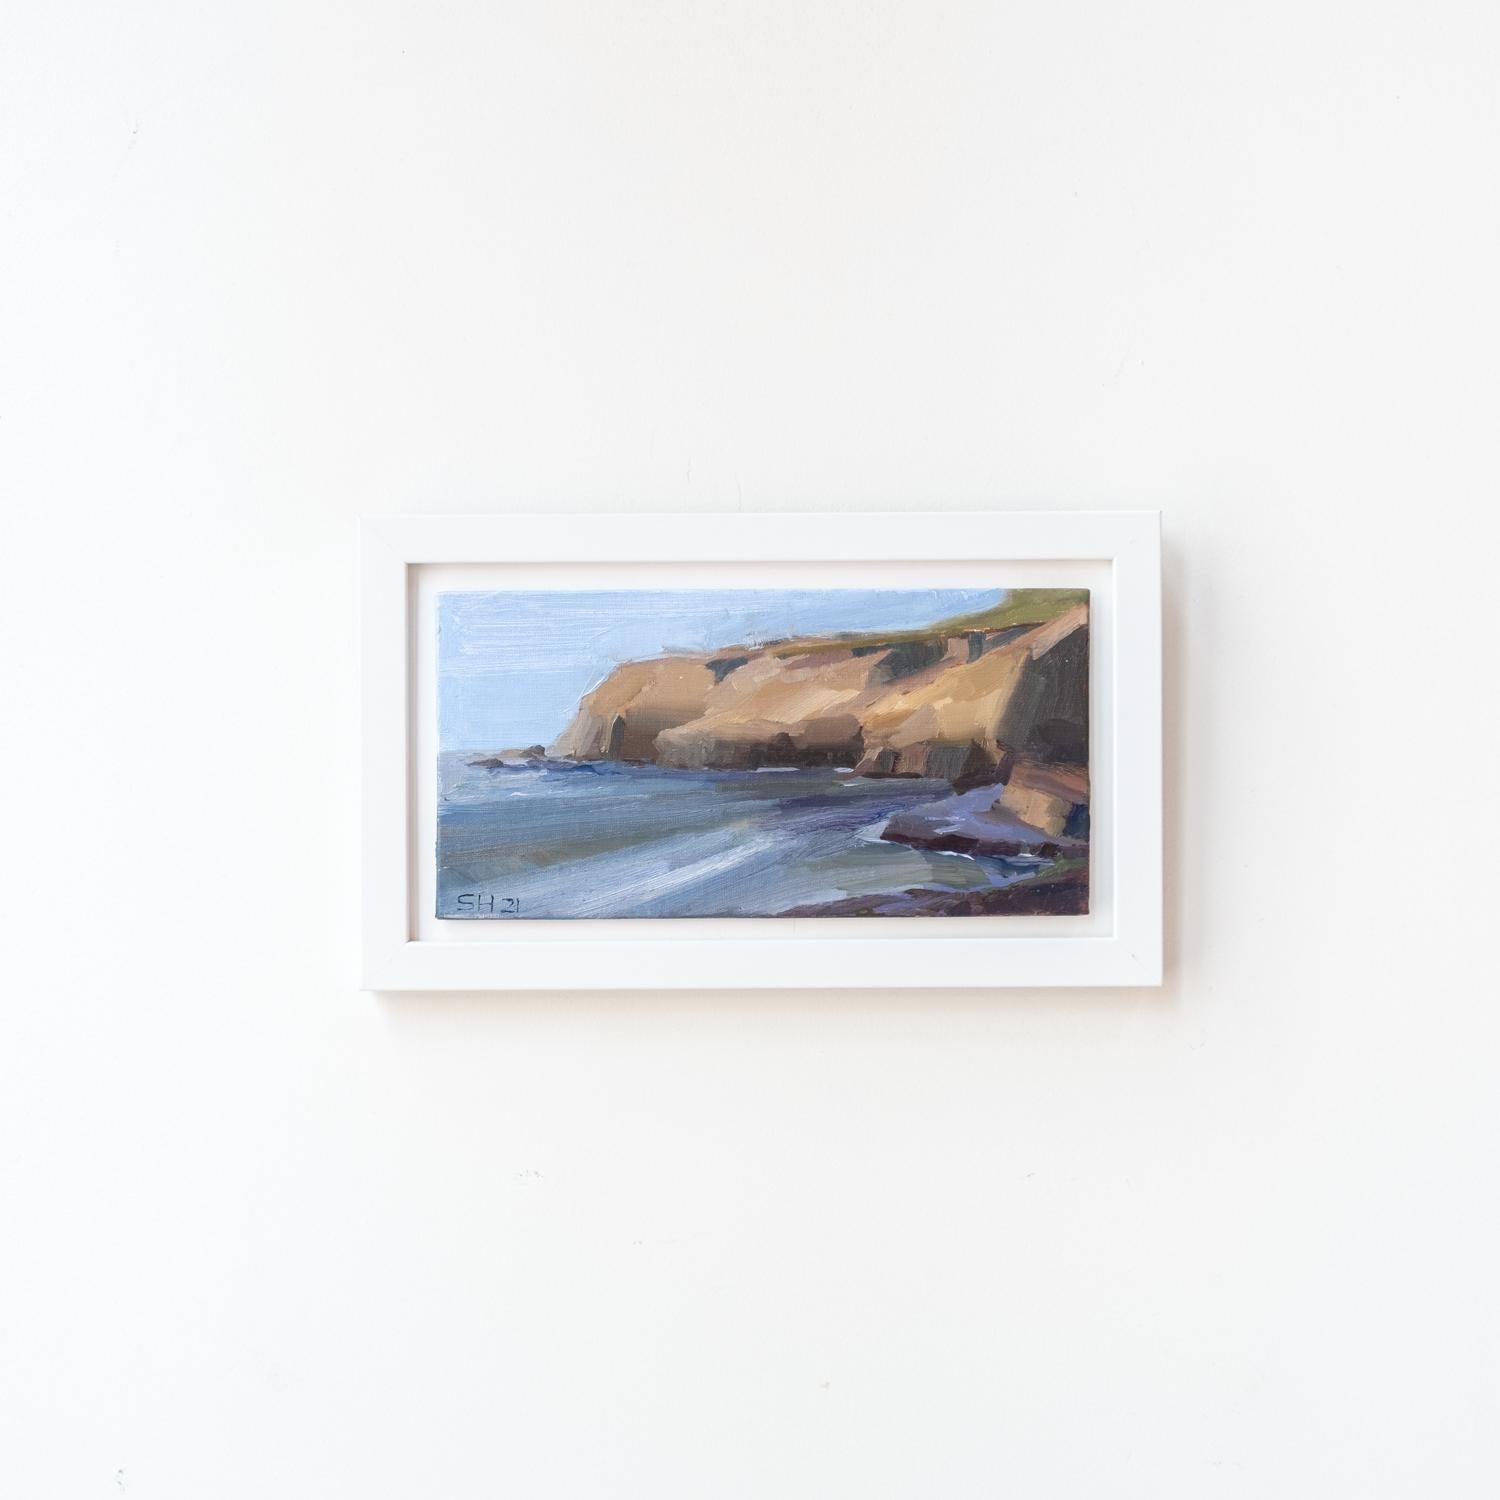 Sean Hnedak Landscape Painting - Impressionist Seascape "Point Loma Cliffs"